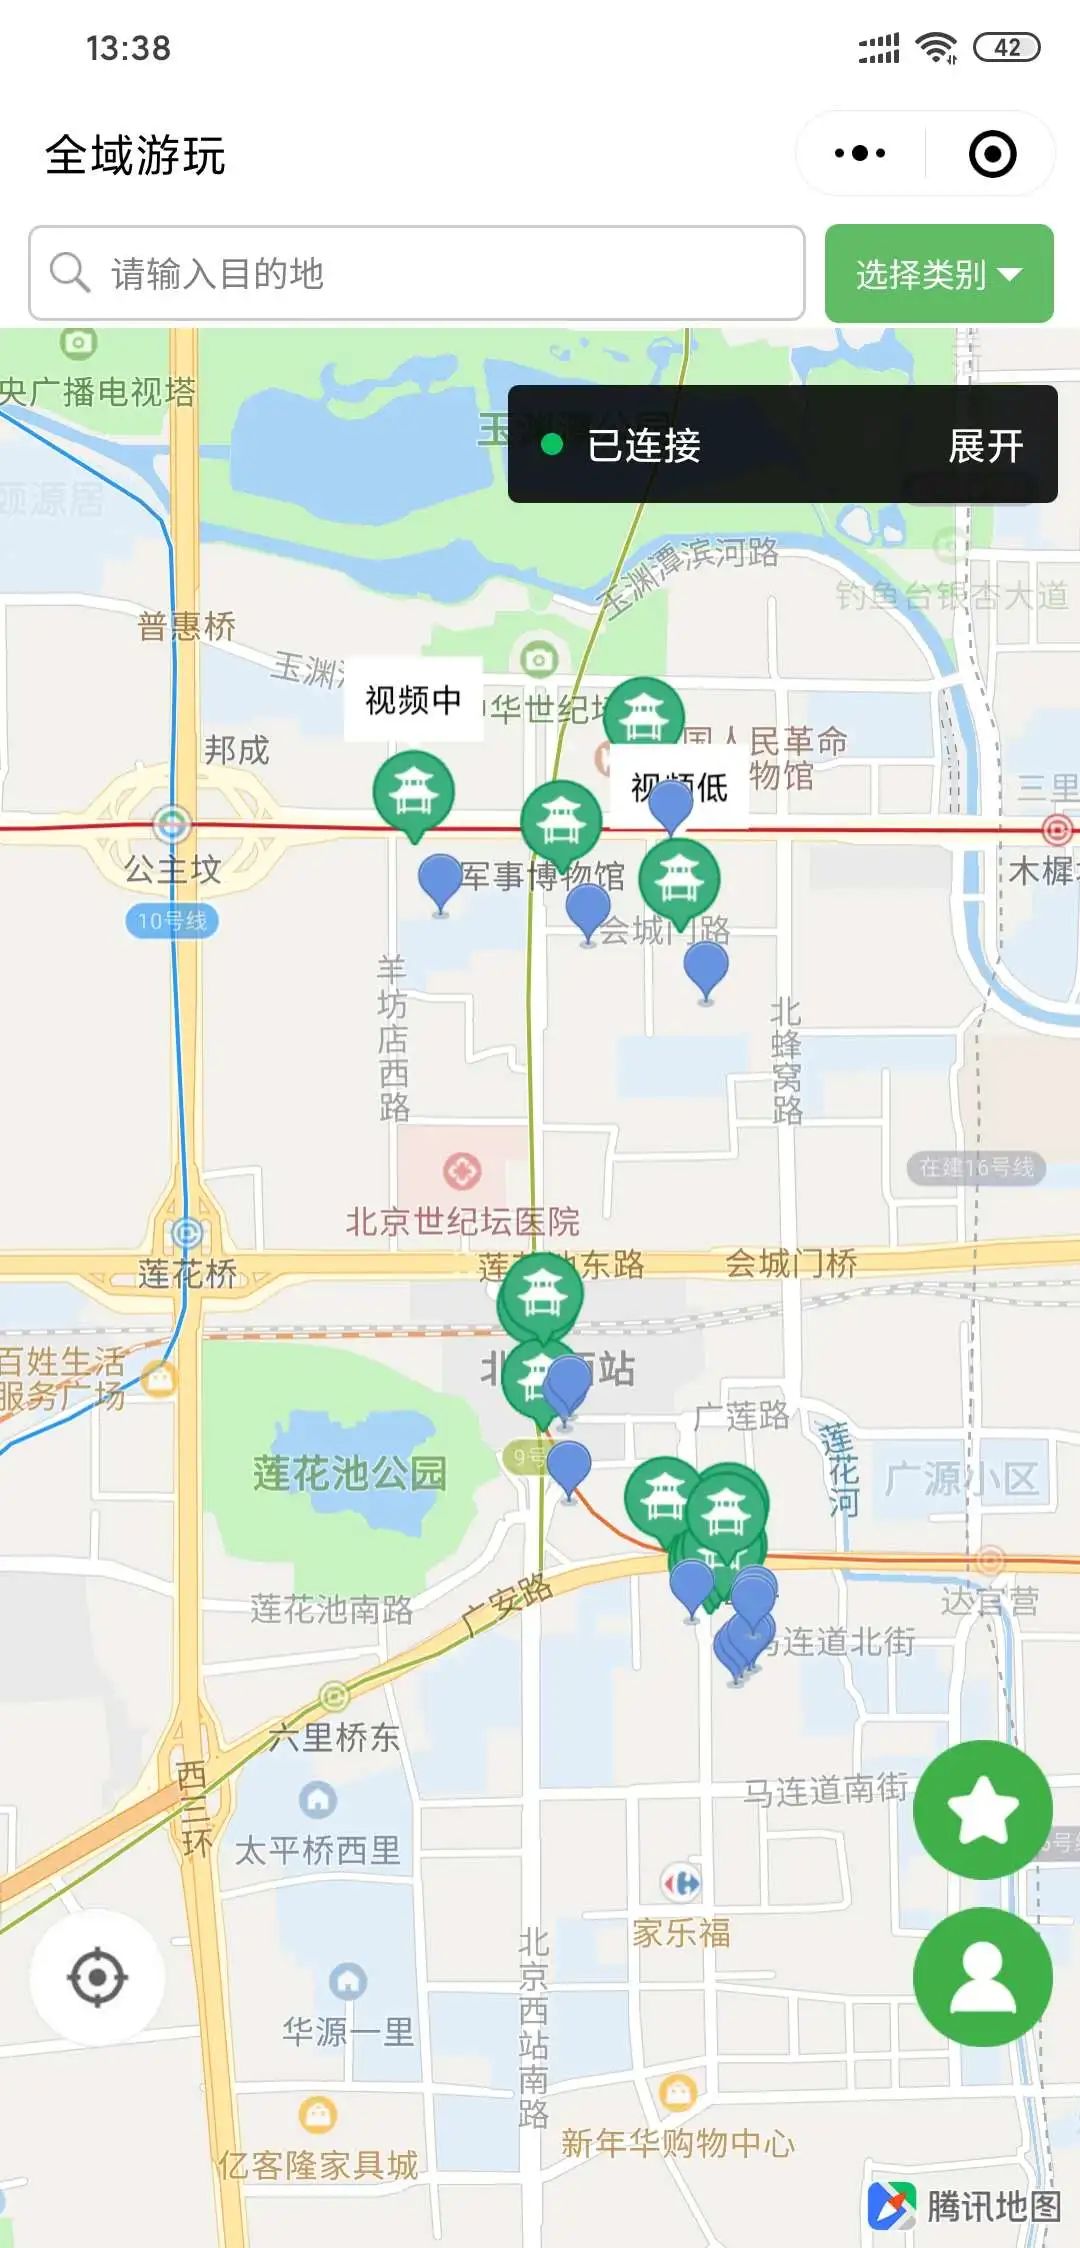 腾讯地图+_微信小程序大全_微导航_we123.com